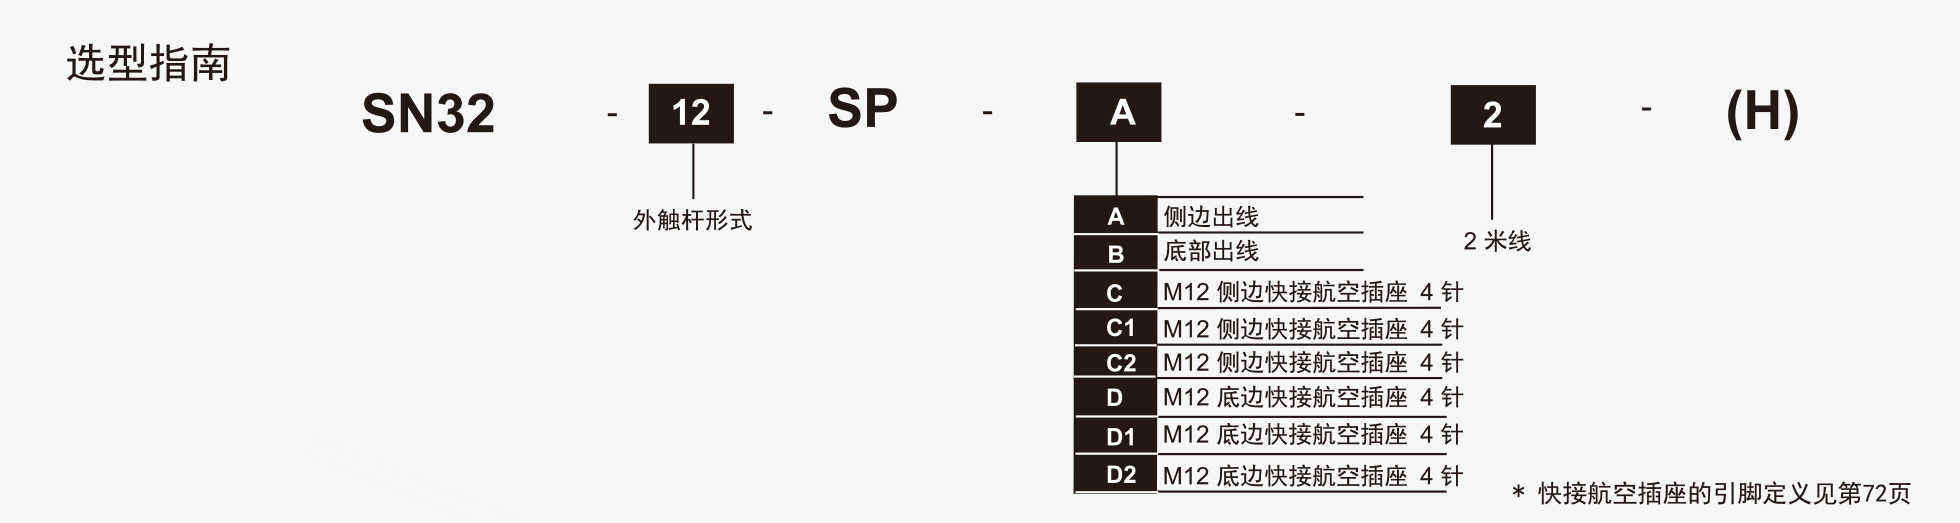 SN32系列选型指南.jpg